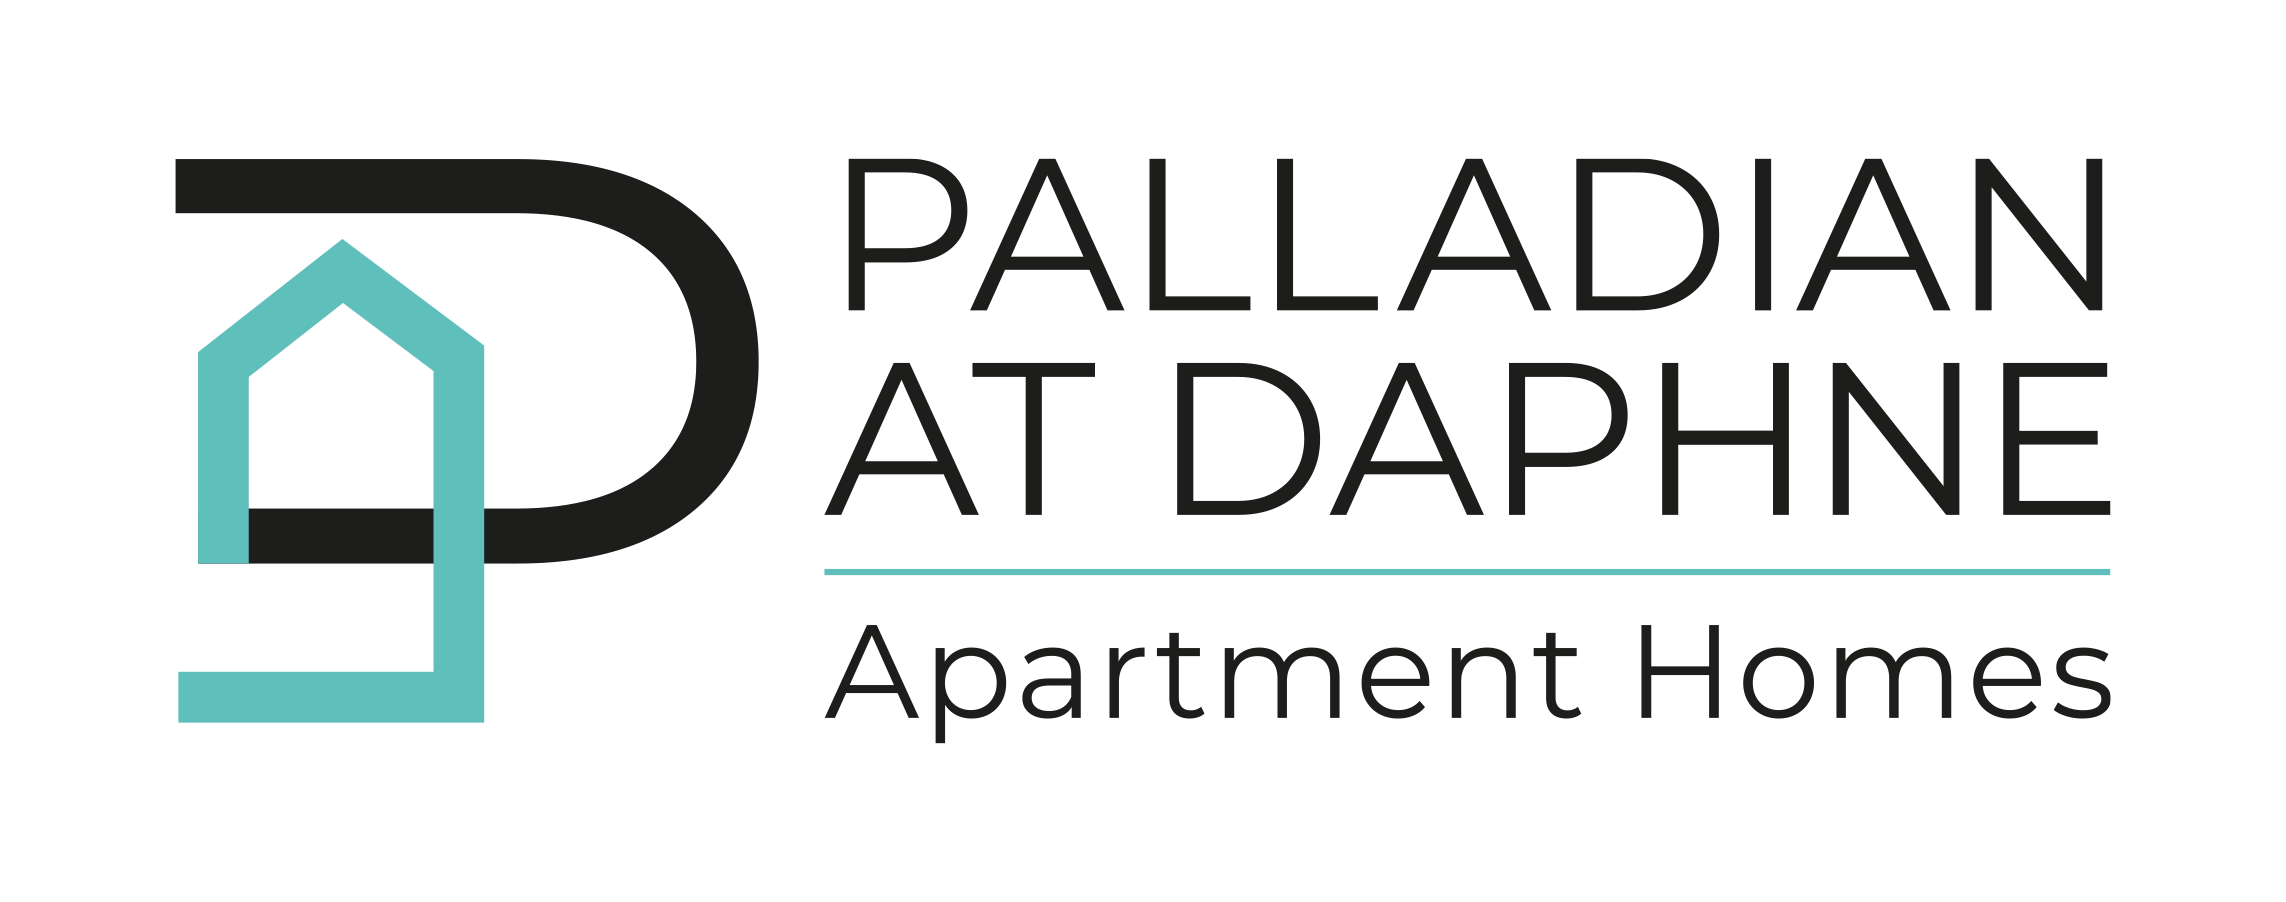 Palladian.png